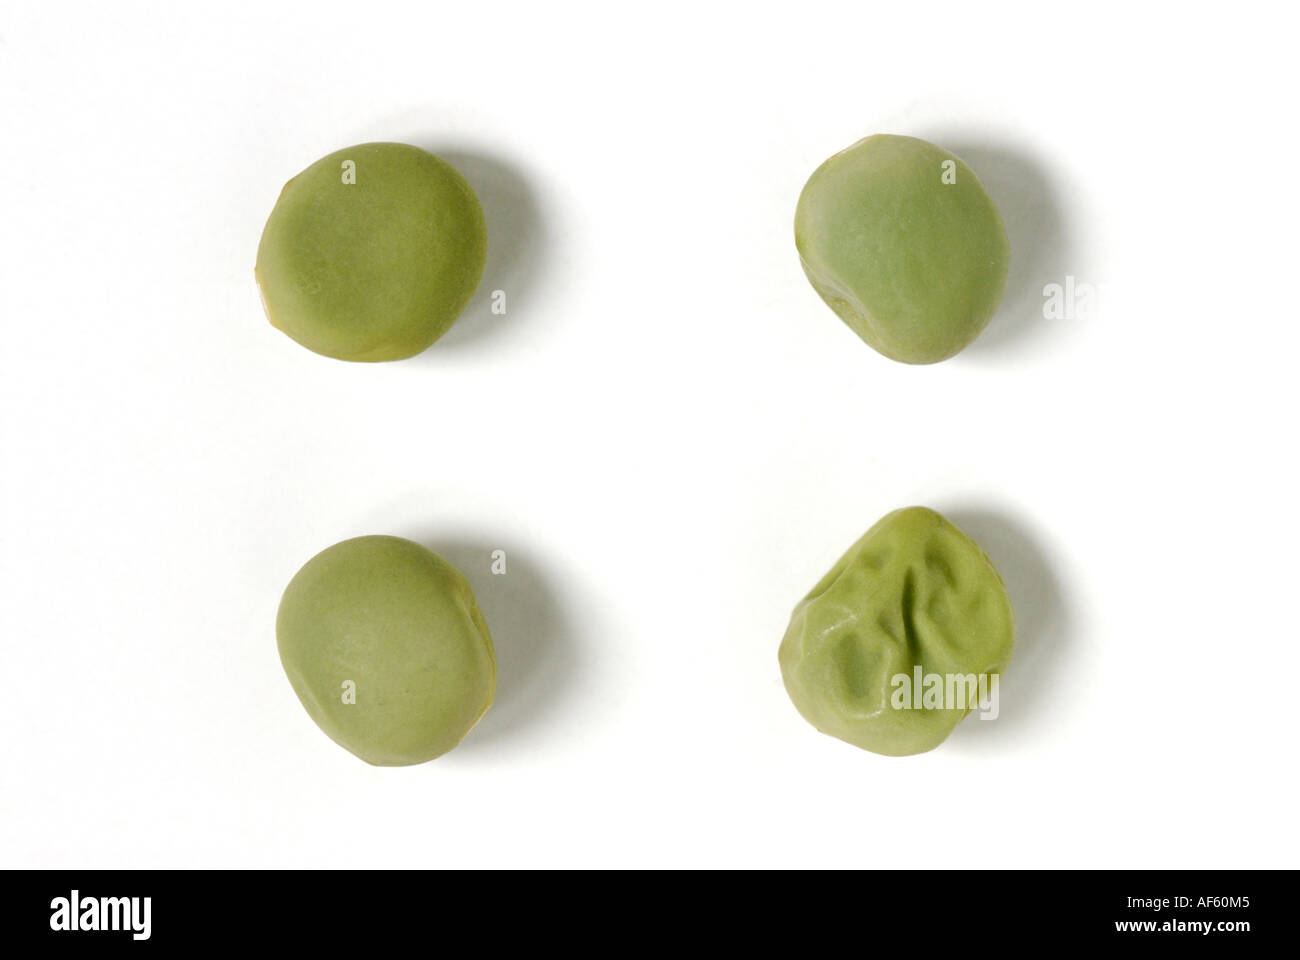 Liscio verde e rugosa i semi di pisello in rapporto 3 a 1 esperimenti di Mendel eredità genetica cestella square Foto Stock